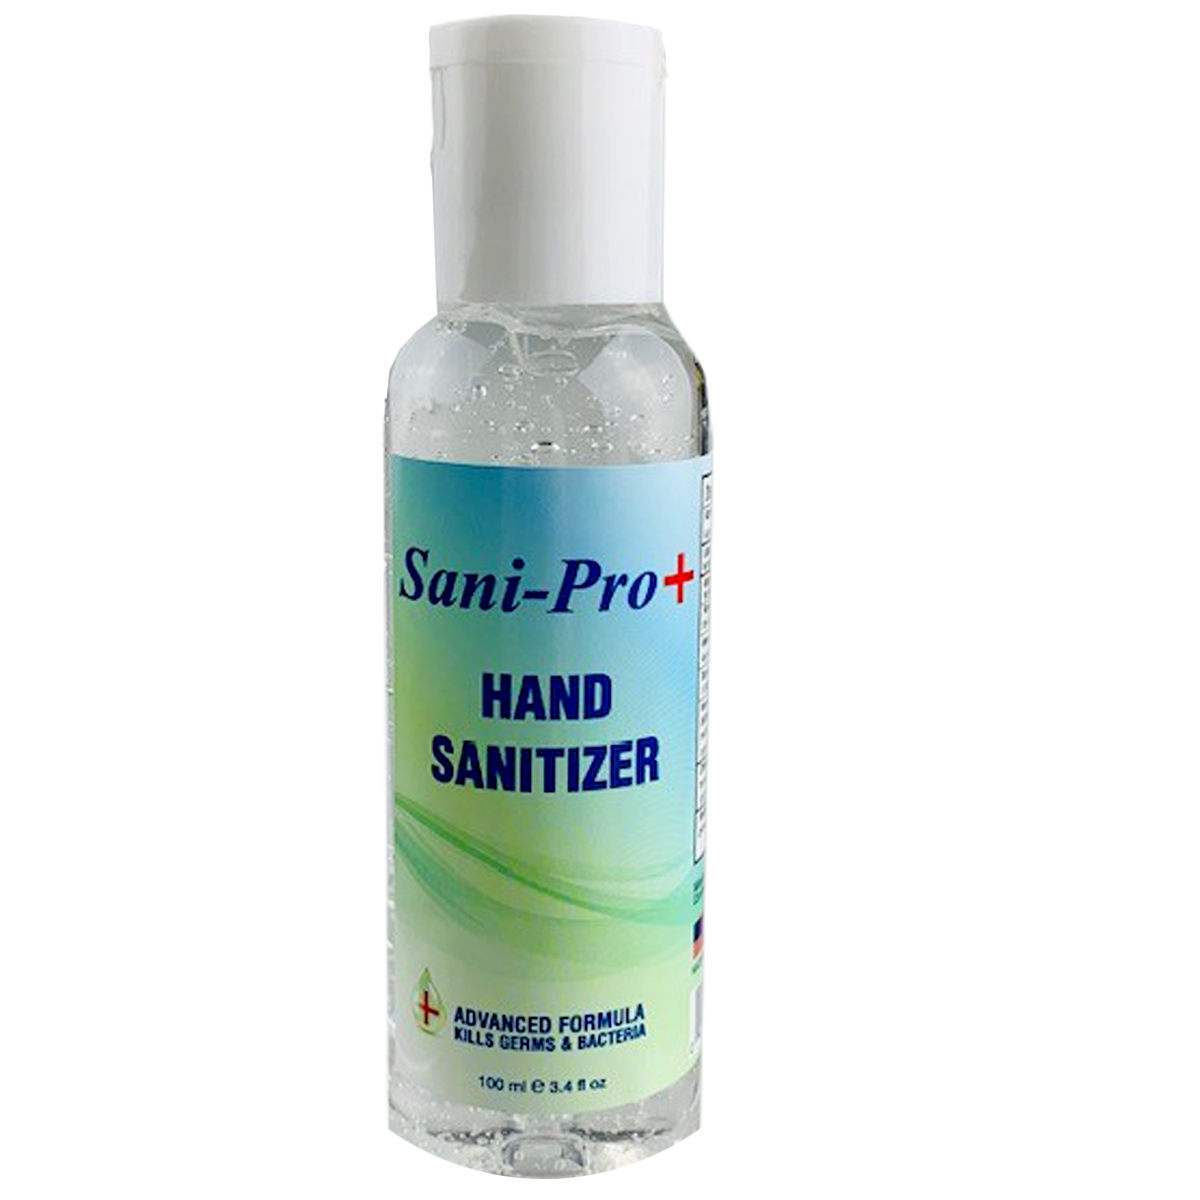 3.4 oz. Gel Hand Sanitizer Bottles